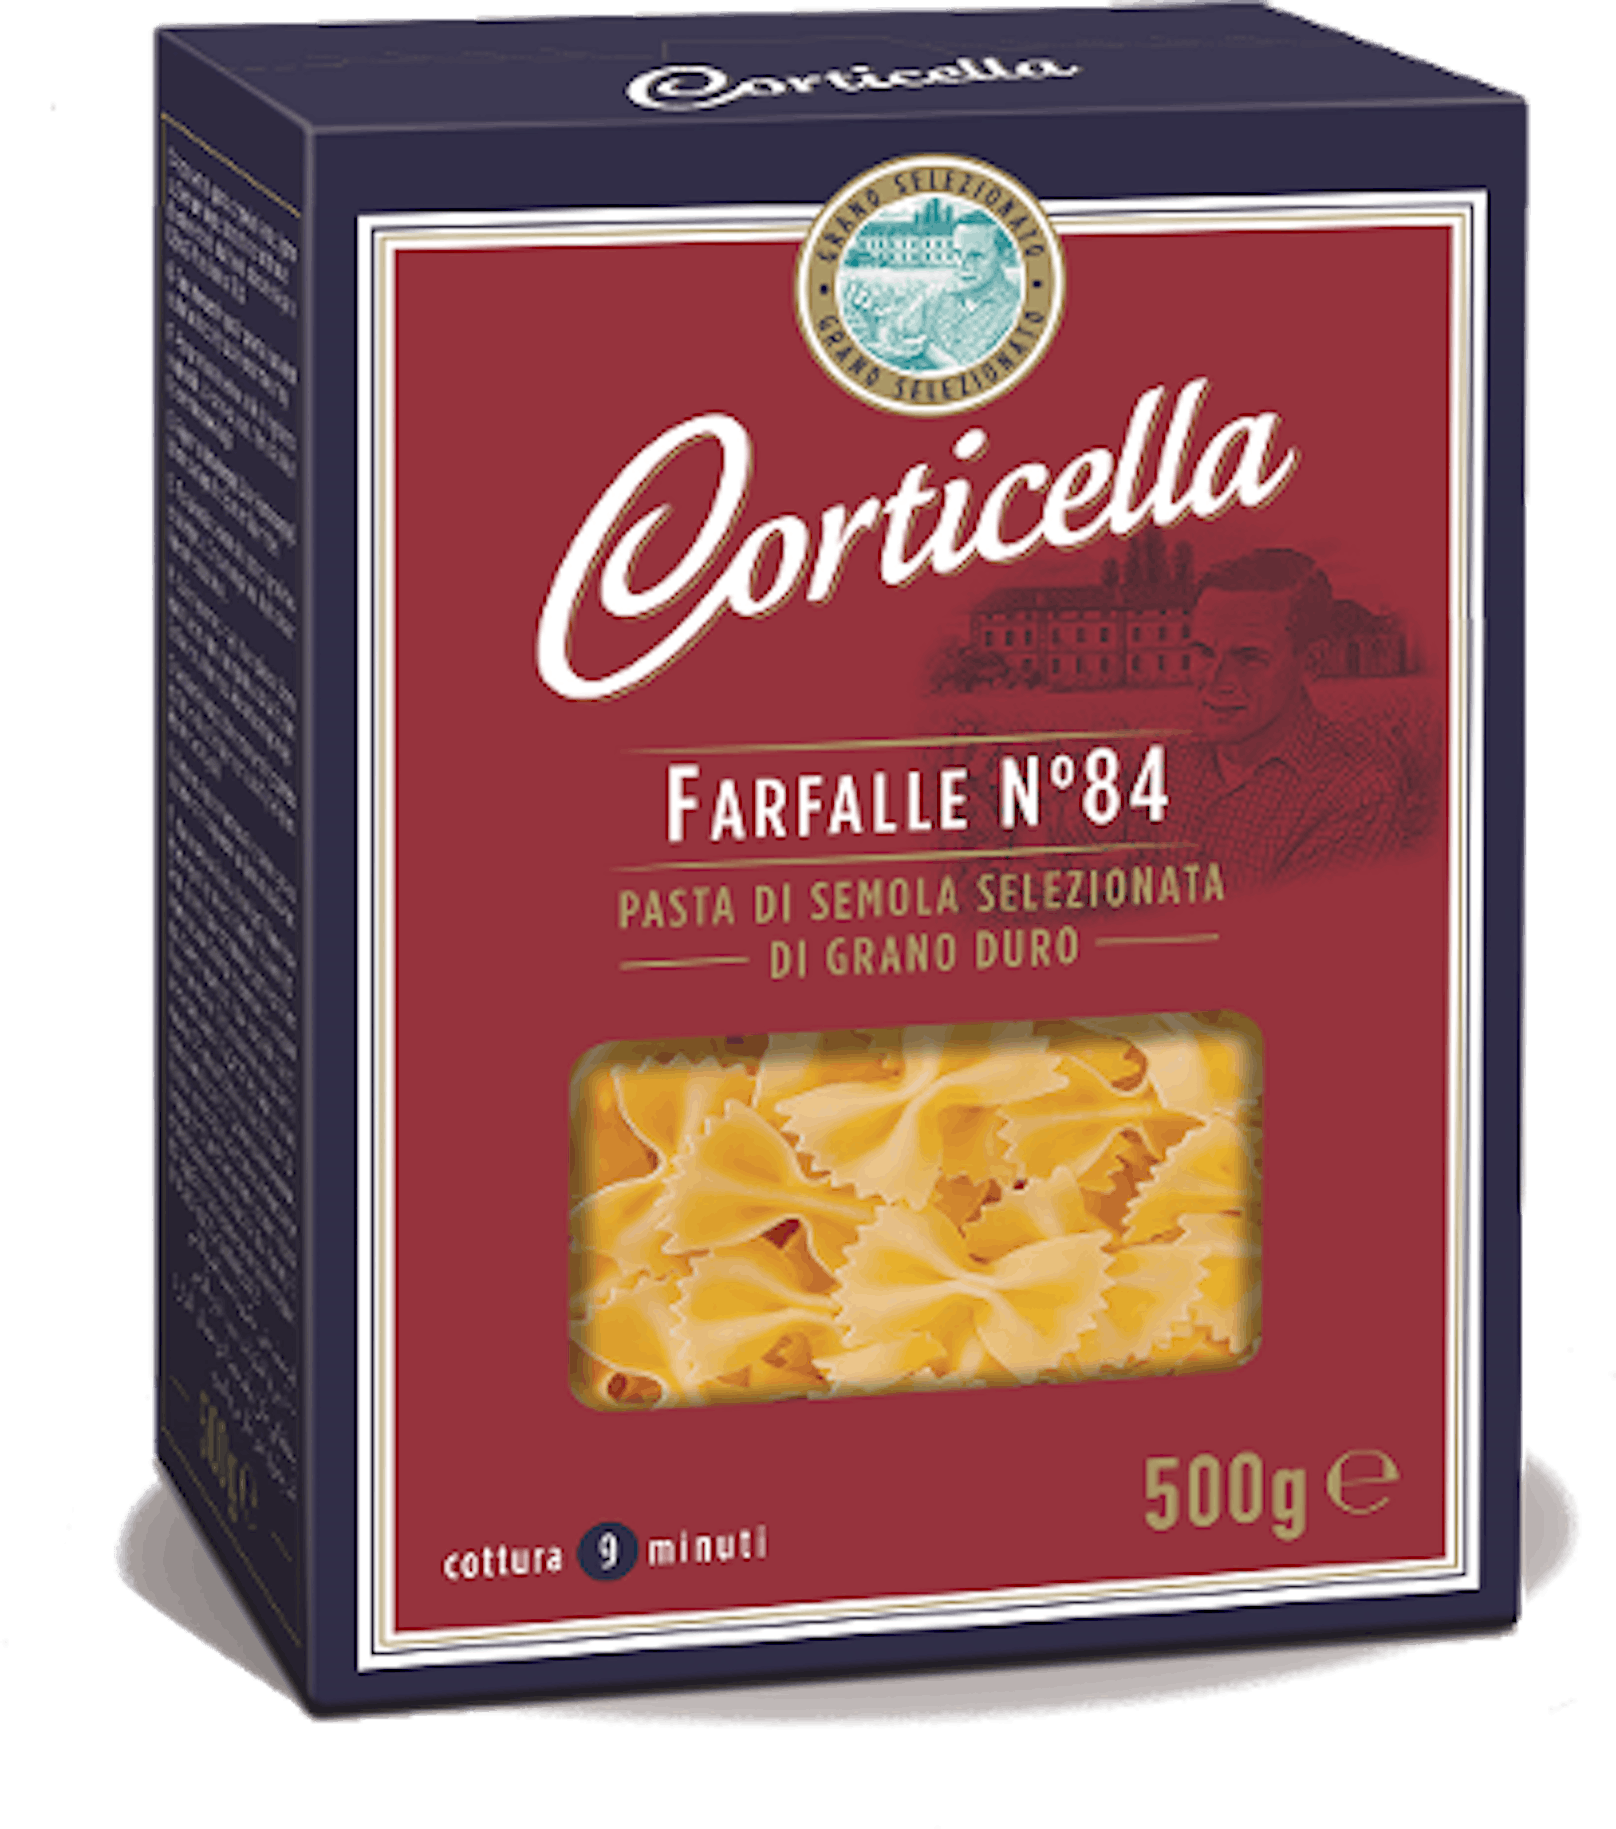 Corticella Farfalle No. 84